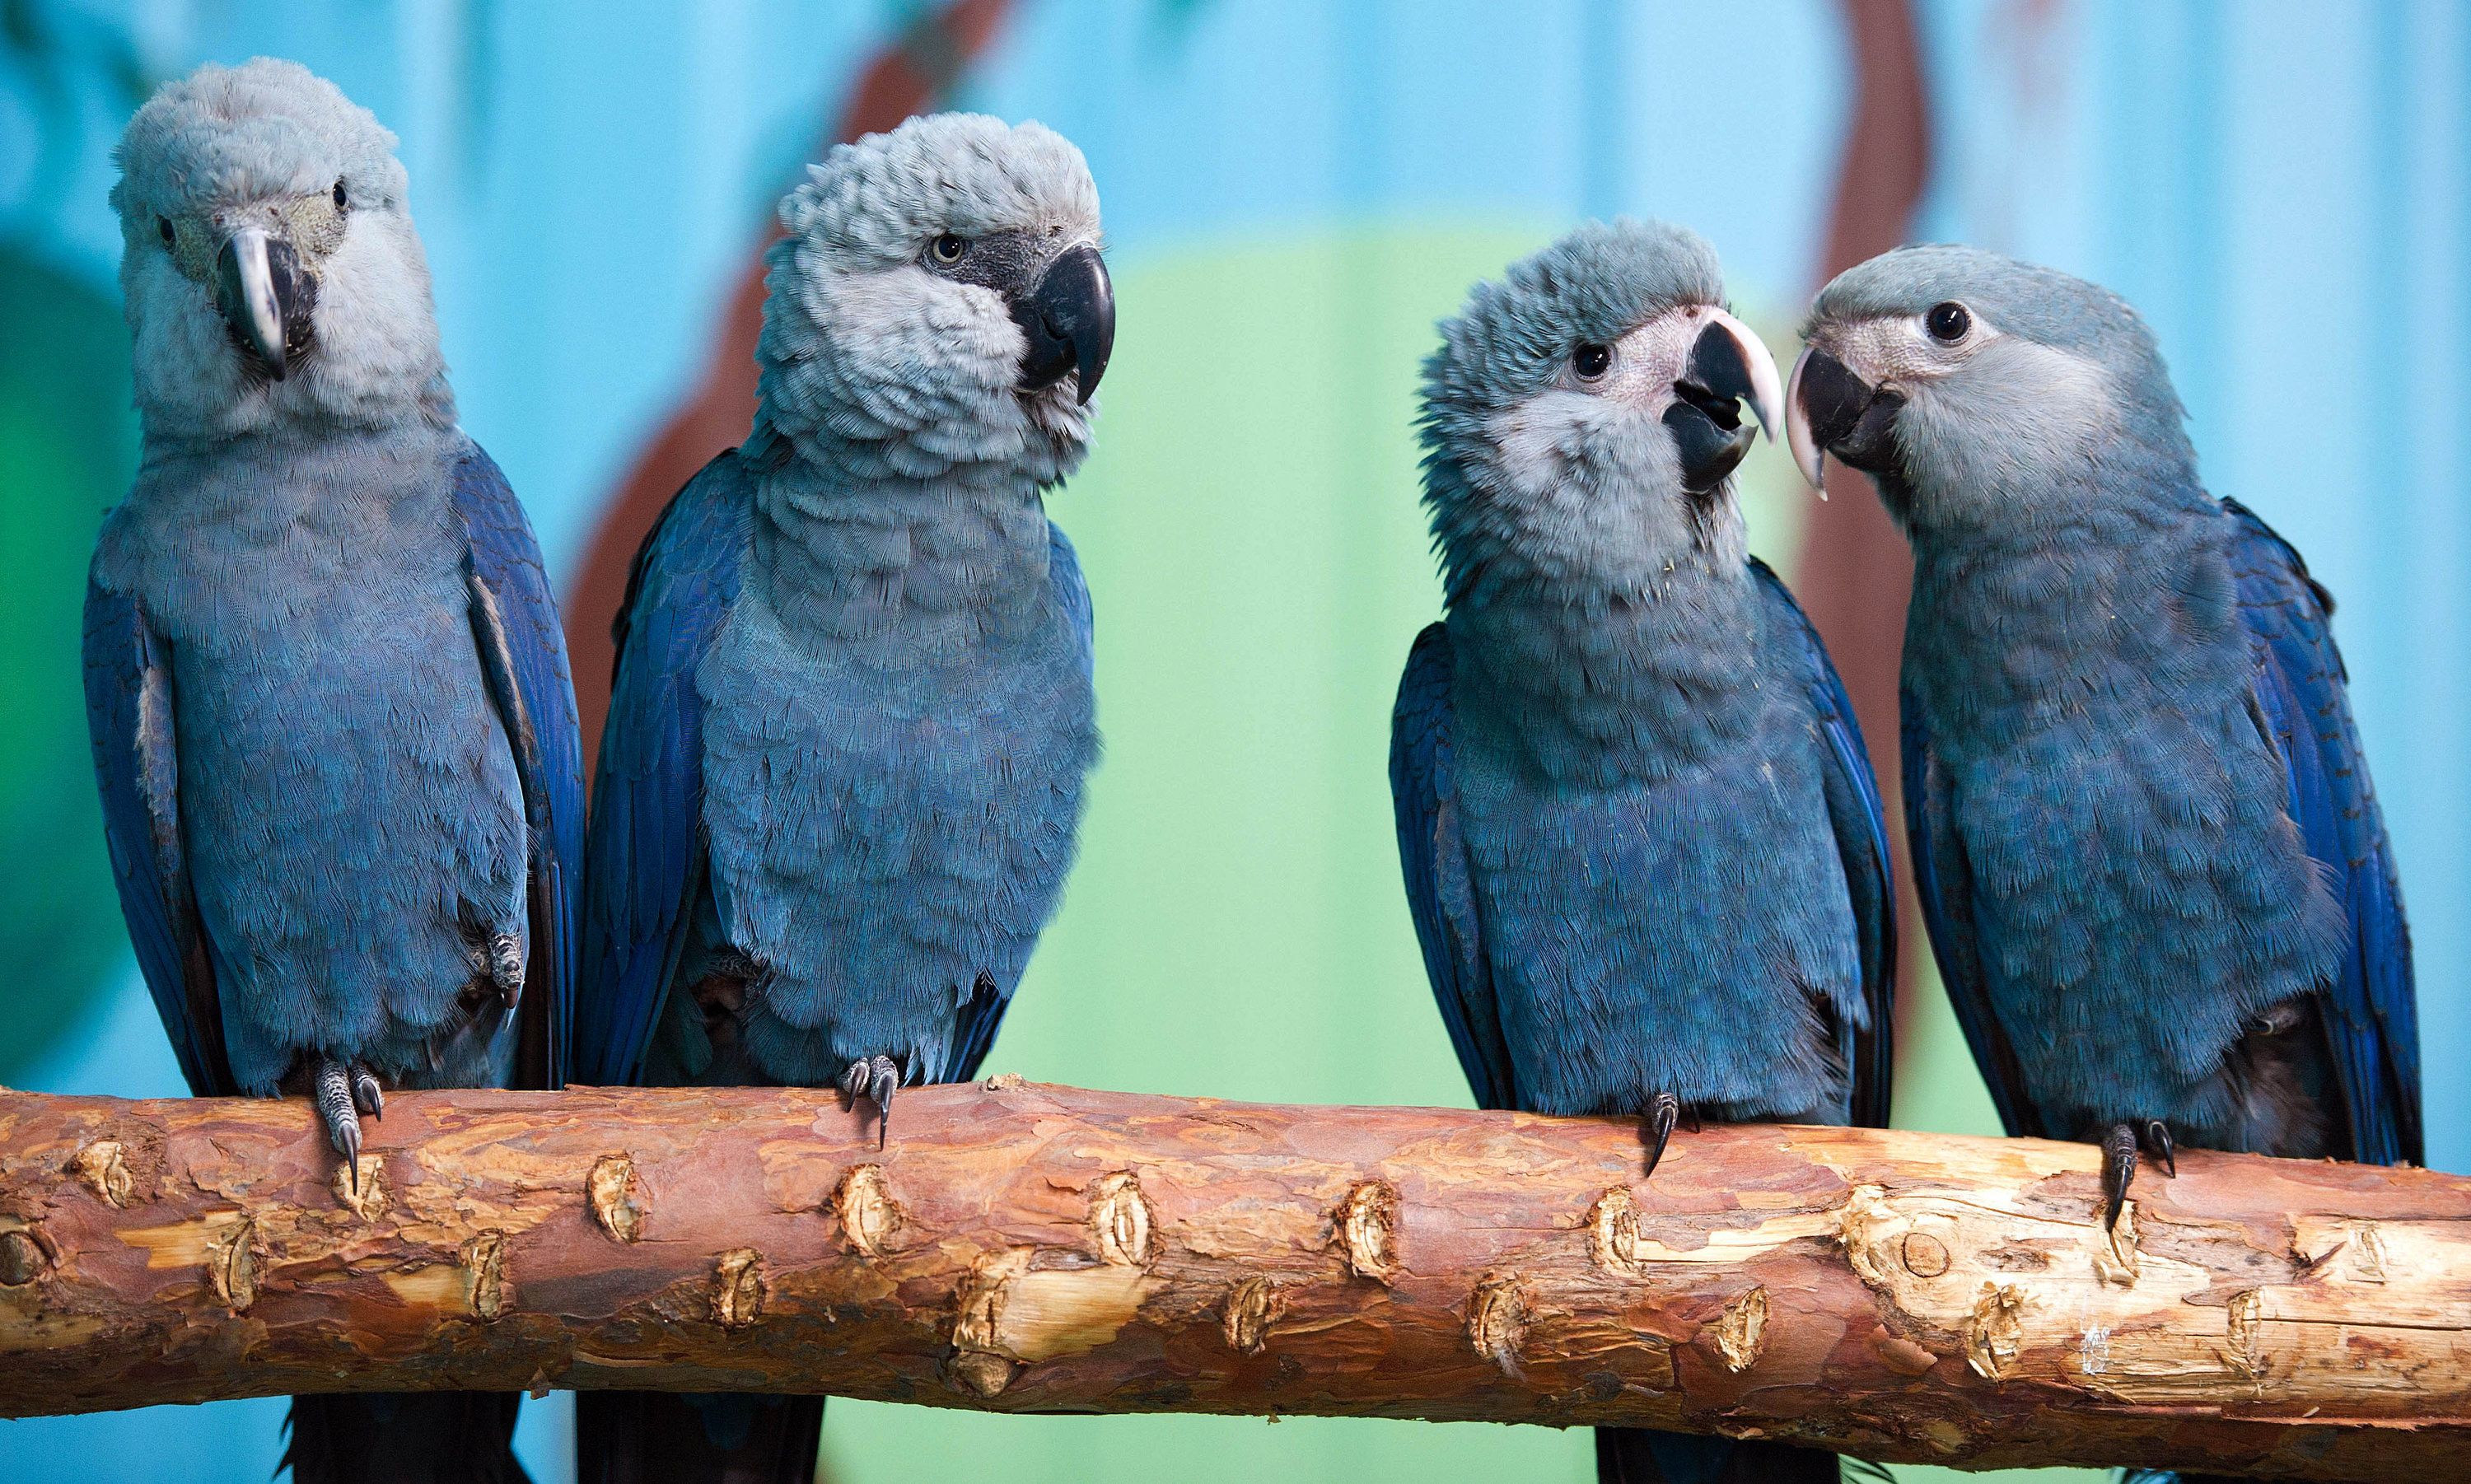 Blue bird from 'Rio' movie now extinct in the wild | CNN